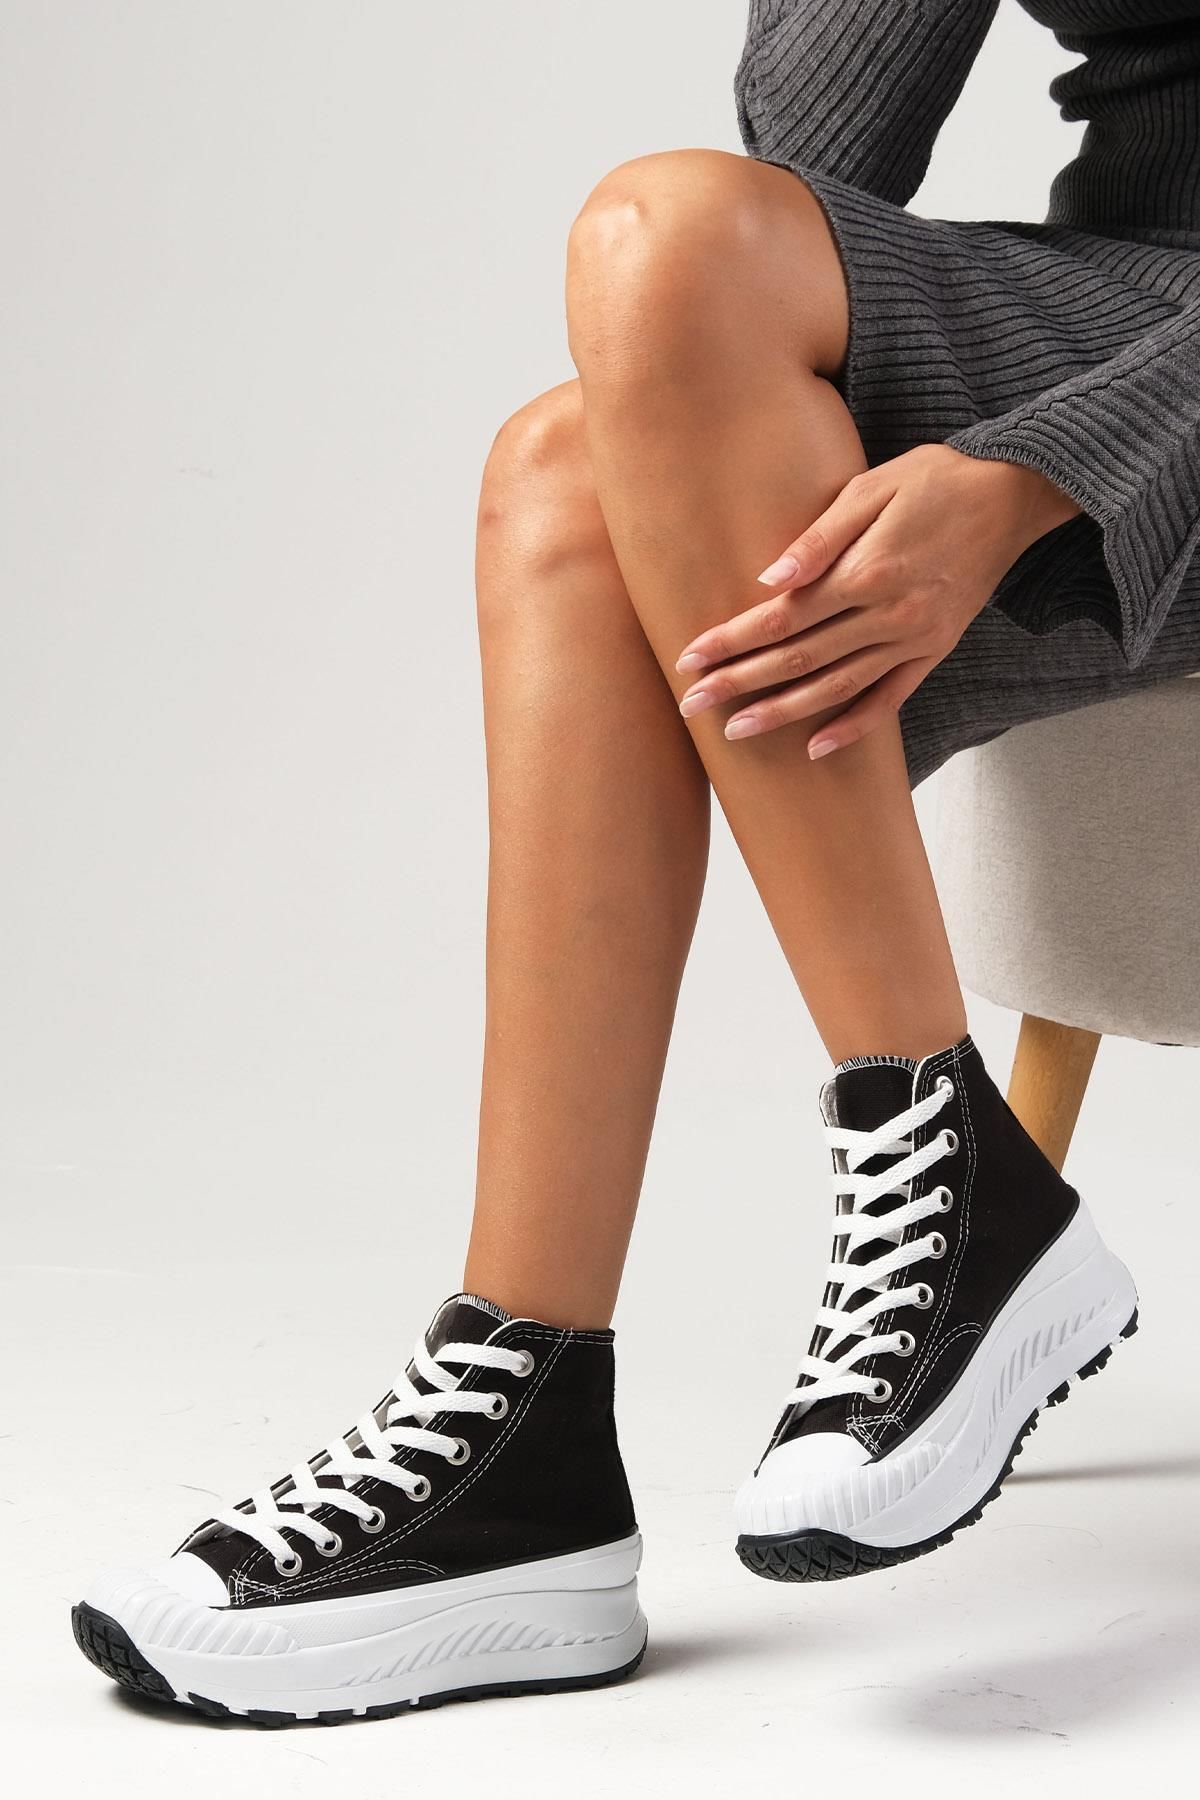 Mio Gusto Bendis Siyah Renk Keten Kalın Tabanlı Yüksek Bilekli Günlük Kadın Sneaker Ayakkabı